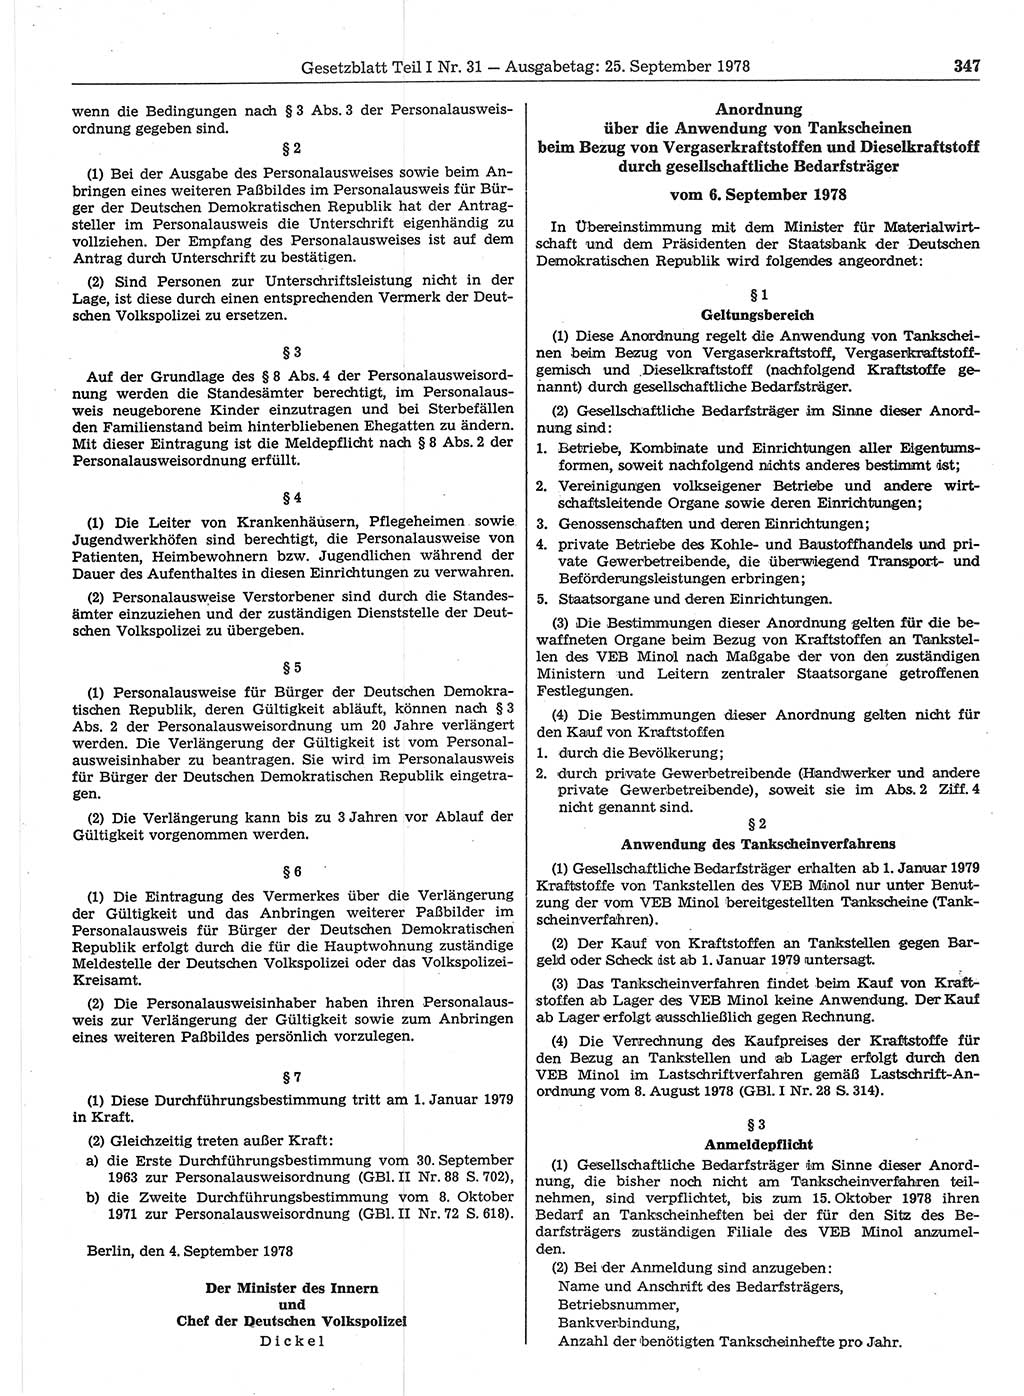 Gesetzblatt (GBl.) der Deutschen Demokratischen Republik (DDR) Teil Ⅰ 1978, Seite 347 (GBl. DDR Ⅰ 1978, S. 347)